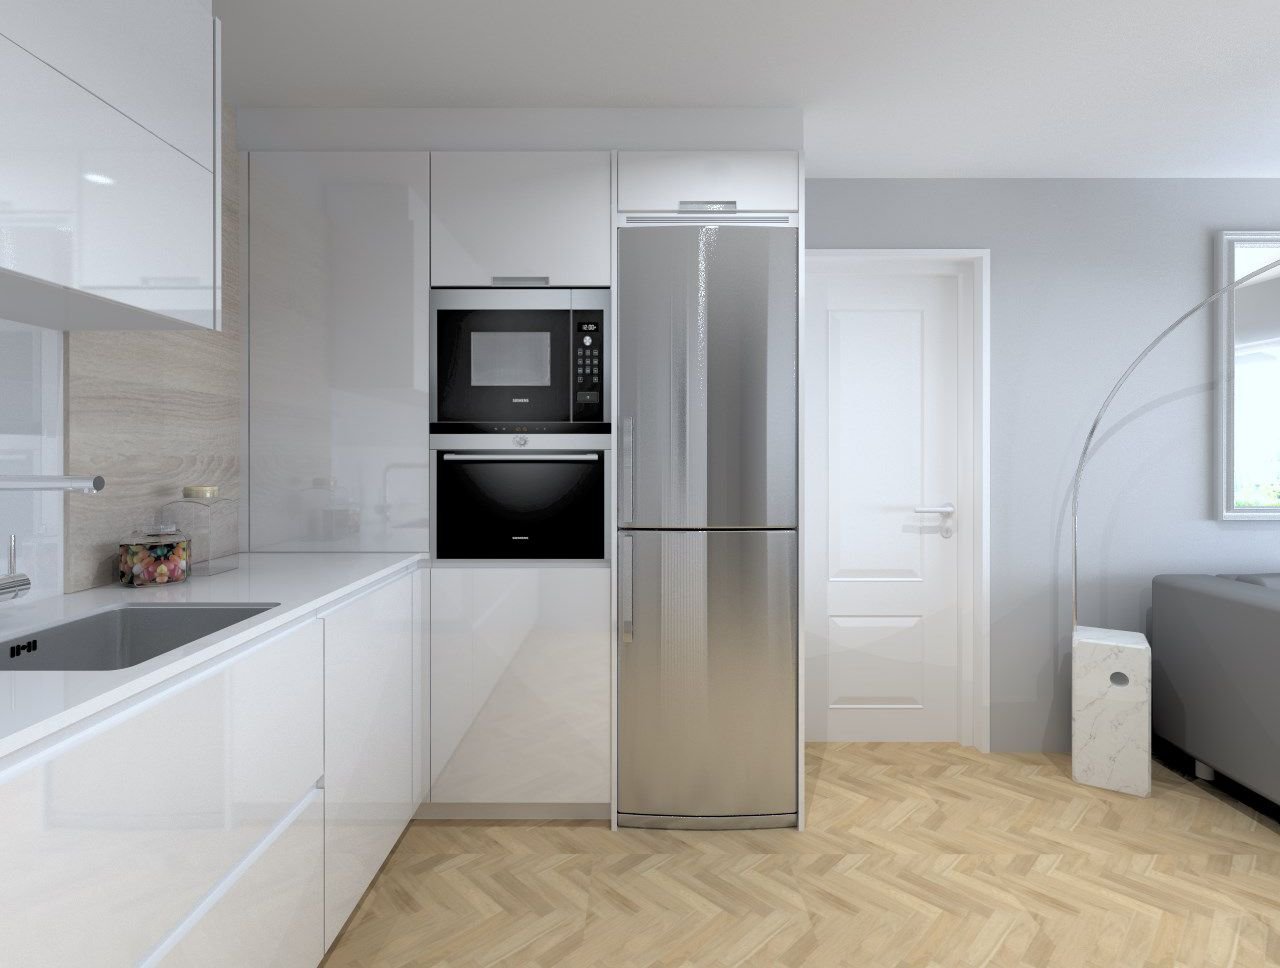 Пенал для встроенного холодильника. Кухня с отдельностоящим холодильником. Встроенный холодильник в пенале. Отдельностоящий холодильник в интерьере. Встраиваемый холодильник для кухни.